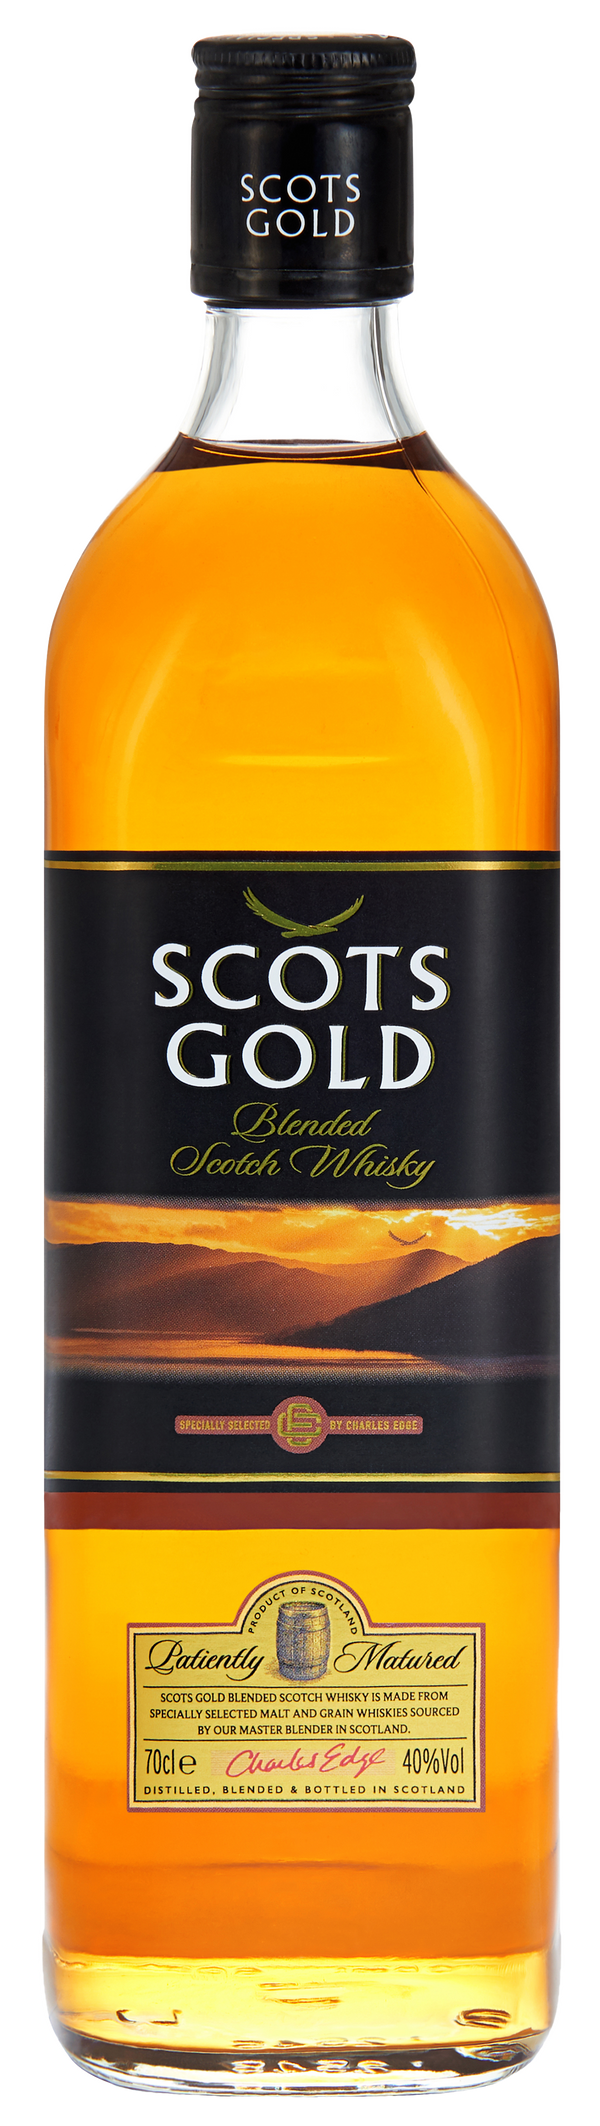 Scots Gold Black Blended Scotch Whisky